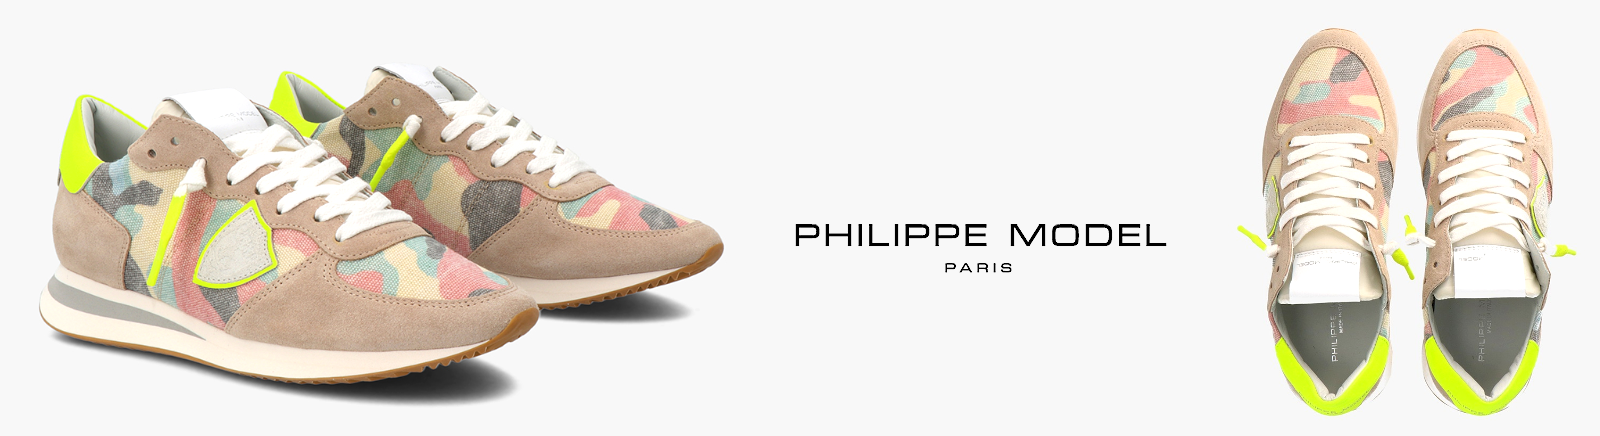 PHILIPPE MODEL Schuhe jetzt online kaufen im GISY Shop